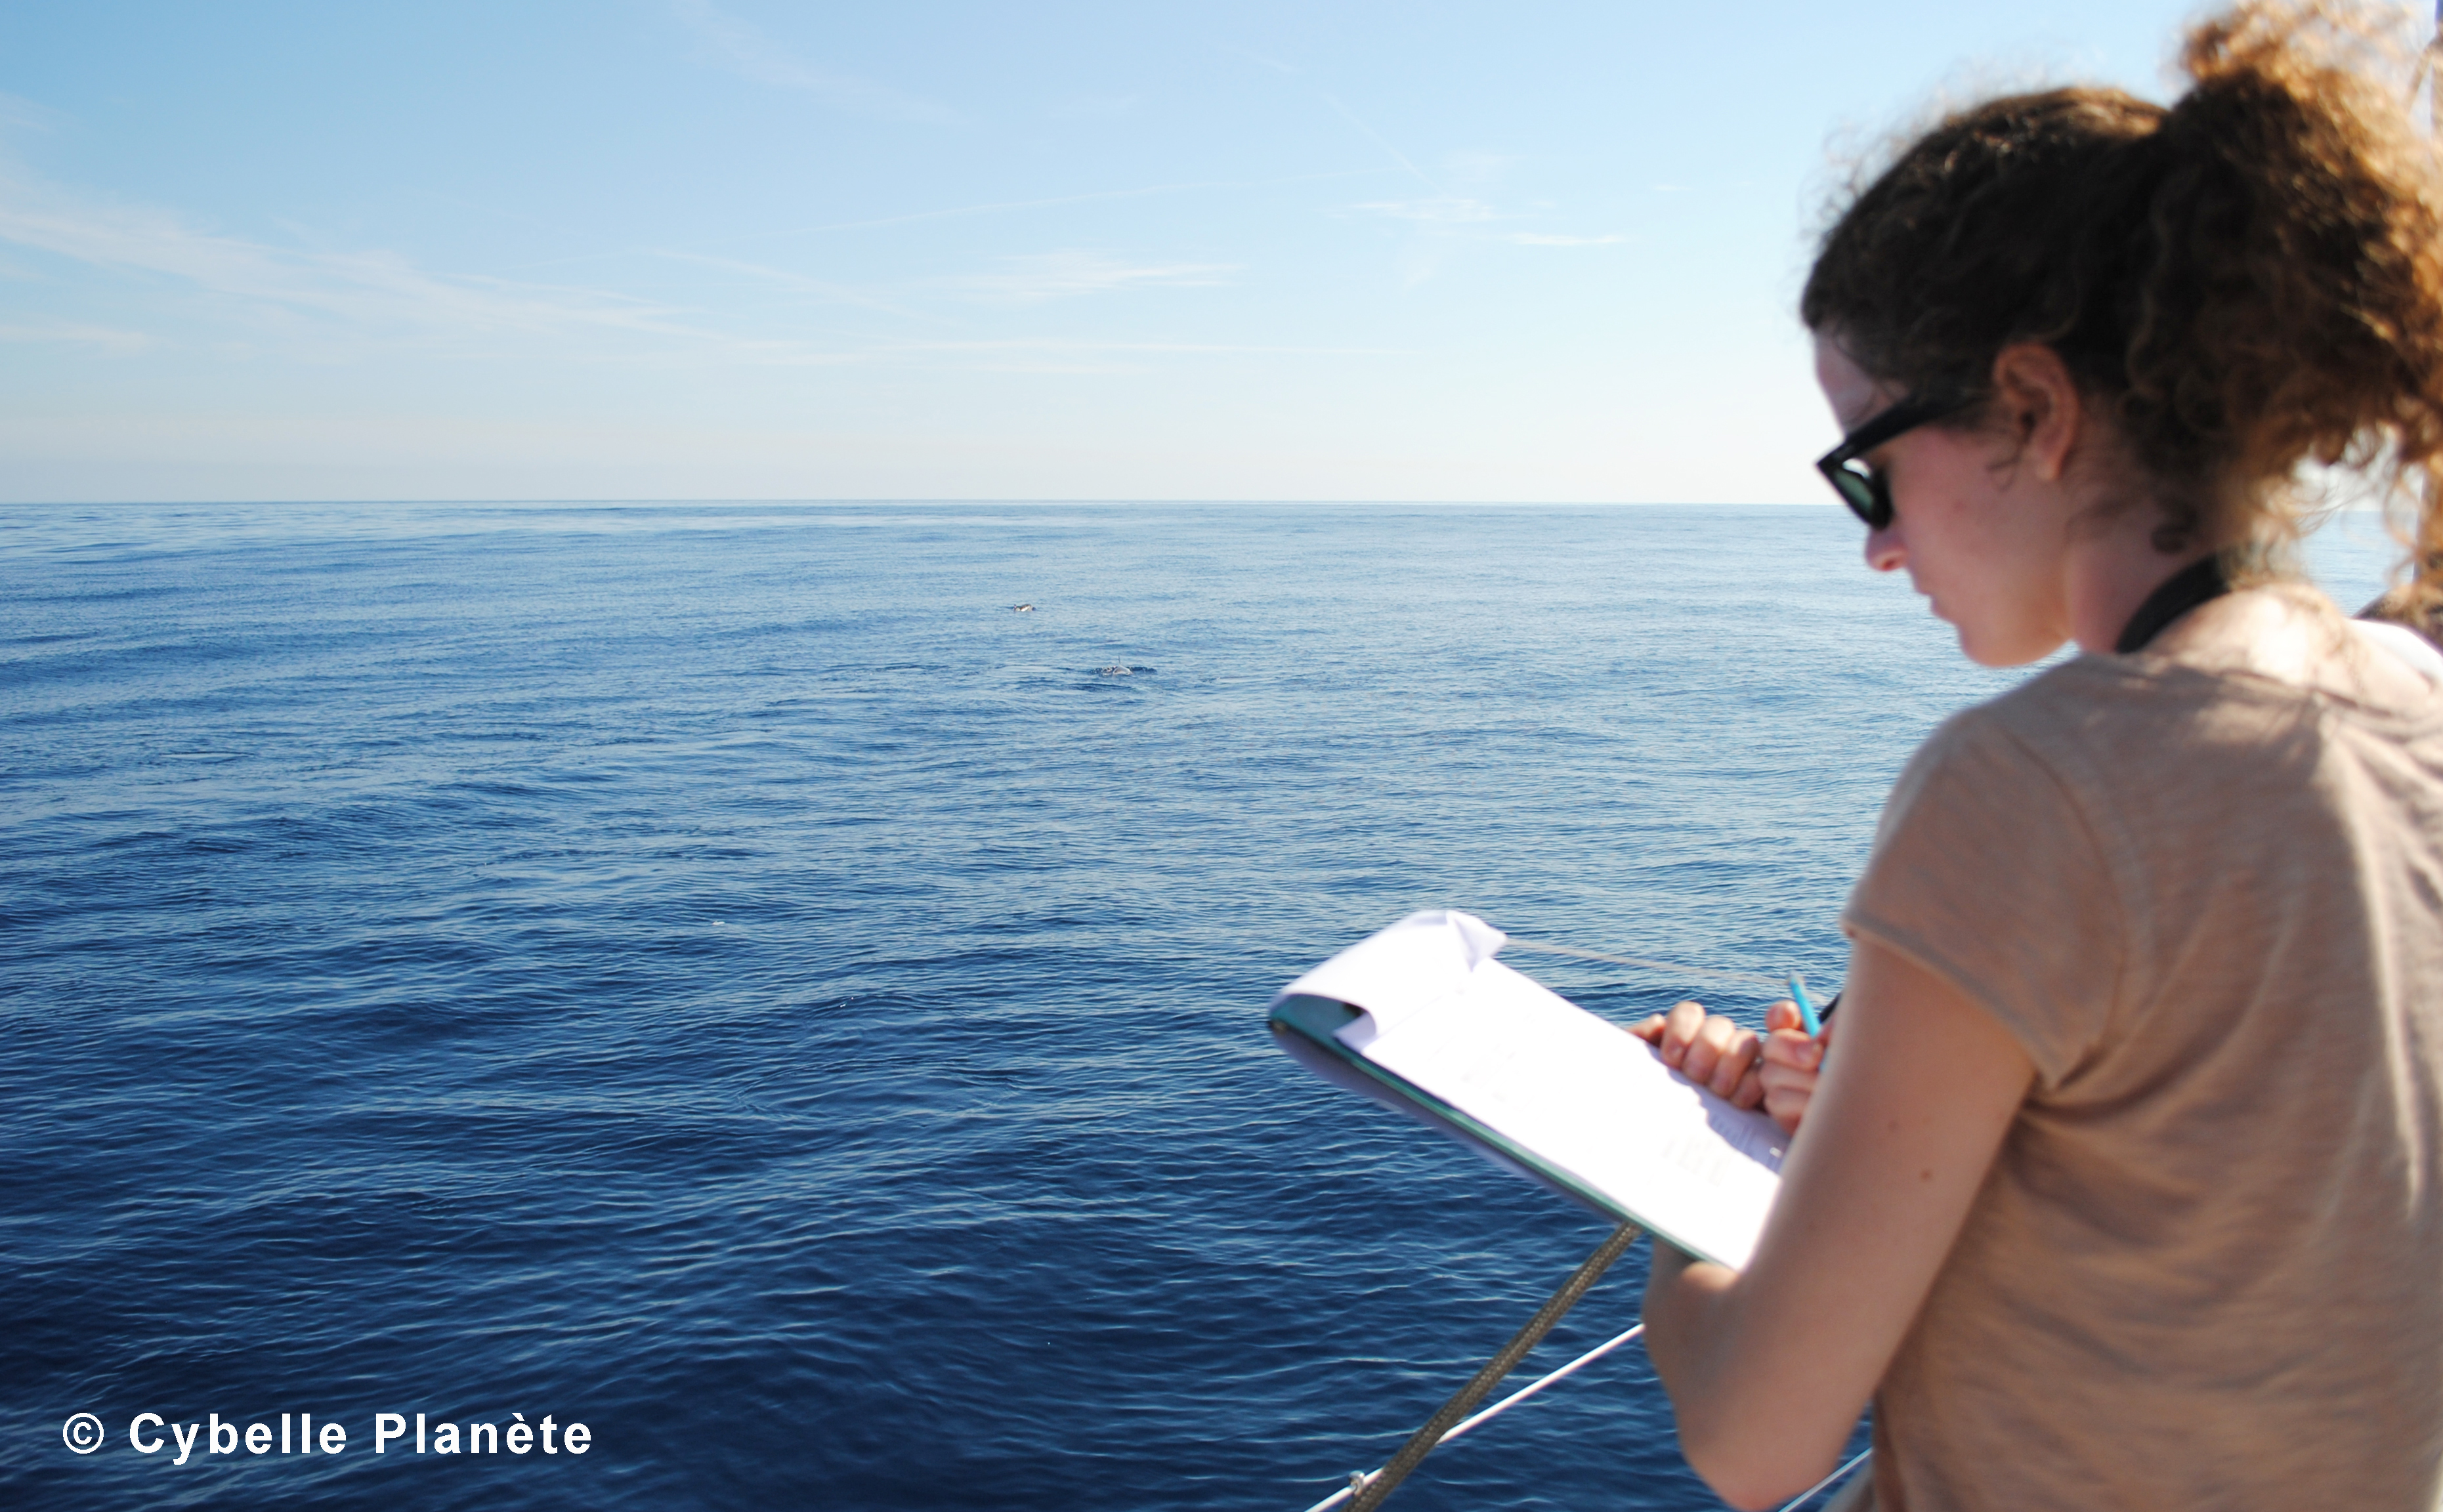 Cet été, partez avec Cybelle Planète en mission d’écovolontariat pour recenser la faune marine de Méditerranée